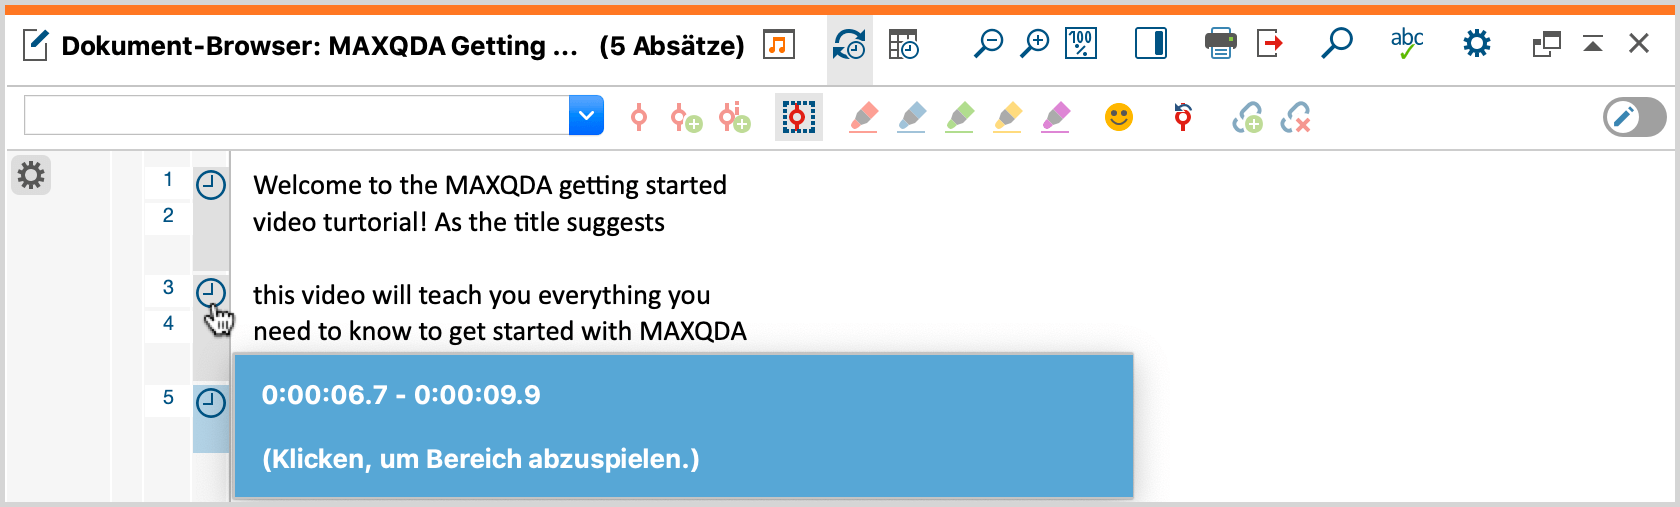 Importierte SRT-Datei im Dokument-Browser von MAXQDA